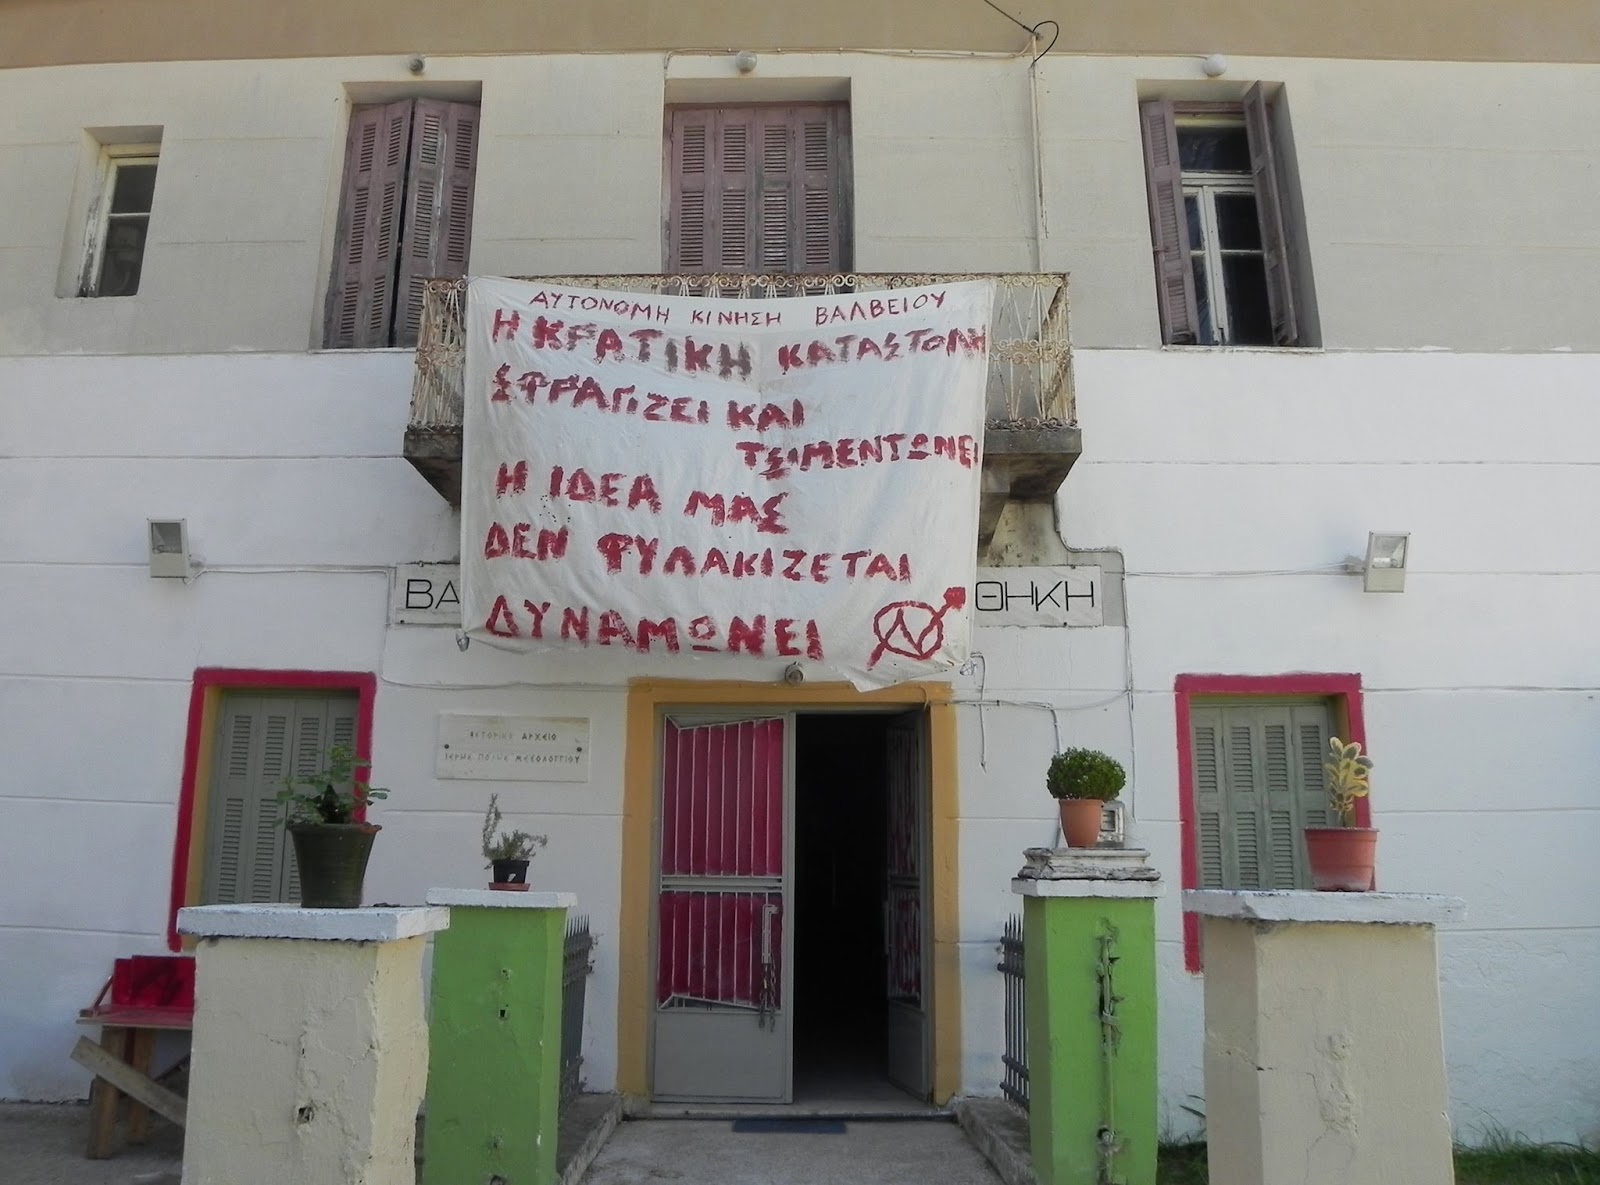 Βάλβειος, Μεσολόγγι : Πέμπτη 20/11, 18:30 – Μικροφωνική ενάντια στην καταστολή και αλληλεγγύης στους πολιτικούς κρατούμενους